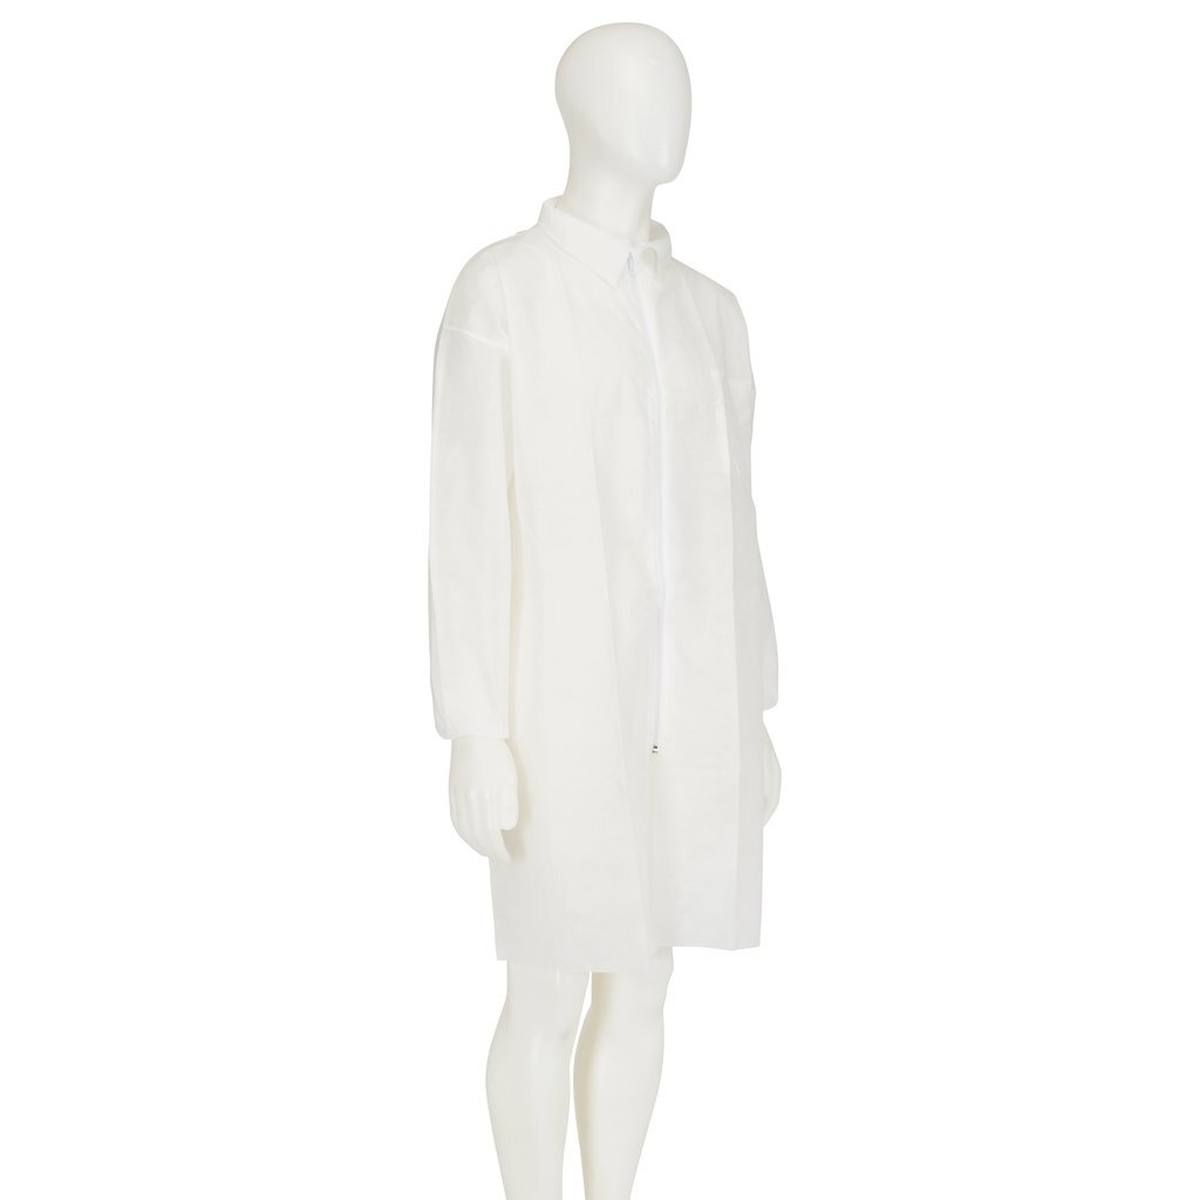 3M 4400 Manteau, blanc, taille M, matière 100% polypropylène, respirant, très léger, avec fermeture éclair